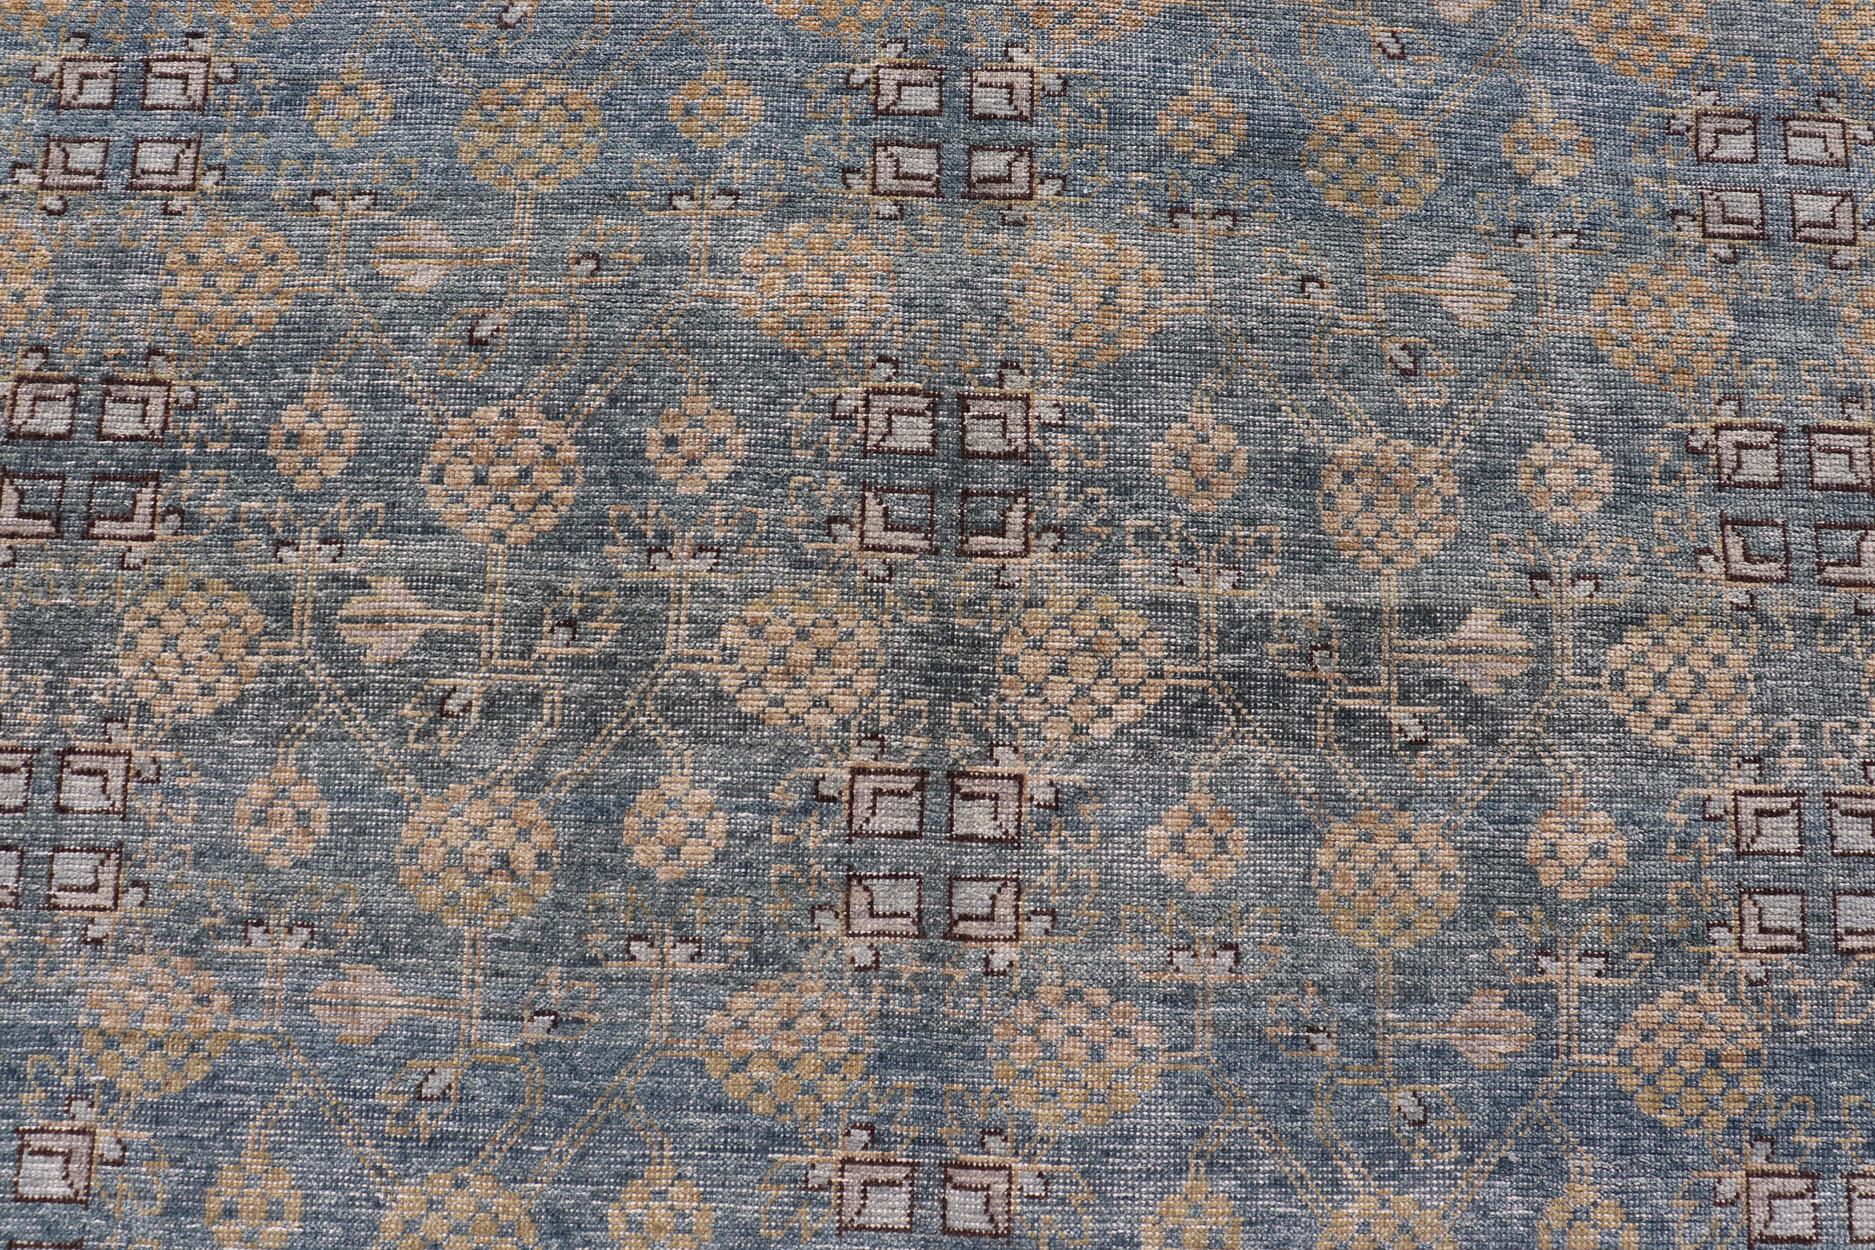 Moderner Khotan-Teppich mit Tribal-Motiven in Dunkelblau, Braun und Creme. Herkunftsland: Afghanistan; Art: Khotan; Design/One: Floral, All-Over; Keivan Woven Arts: teppich/PUR-42561. 
Maße: 12'1 x 15'1 
Dieser moderne Khotan zeichnet sich durch ein